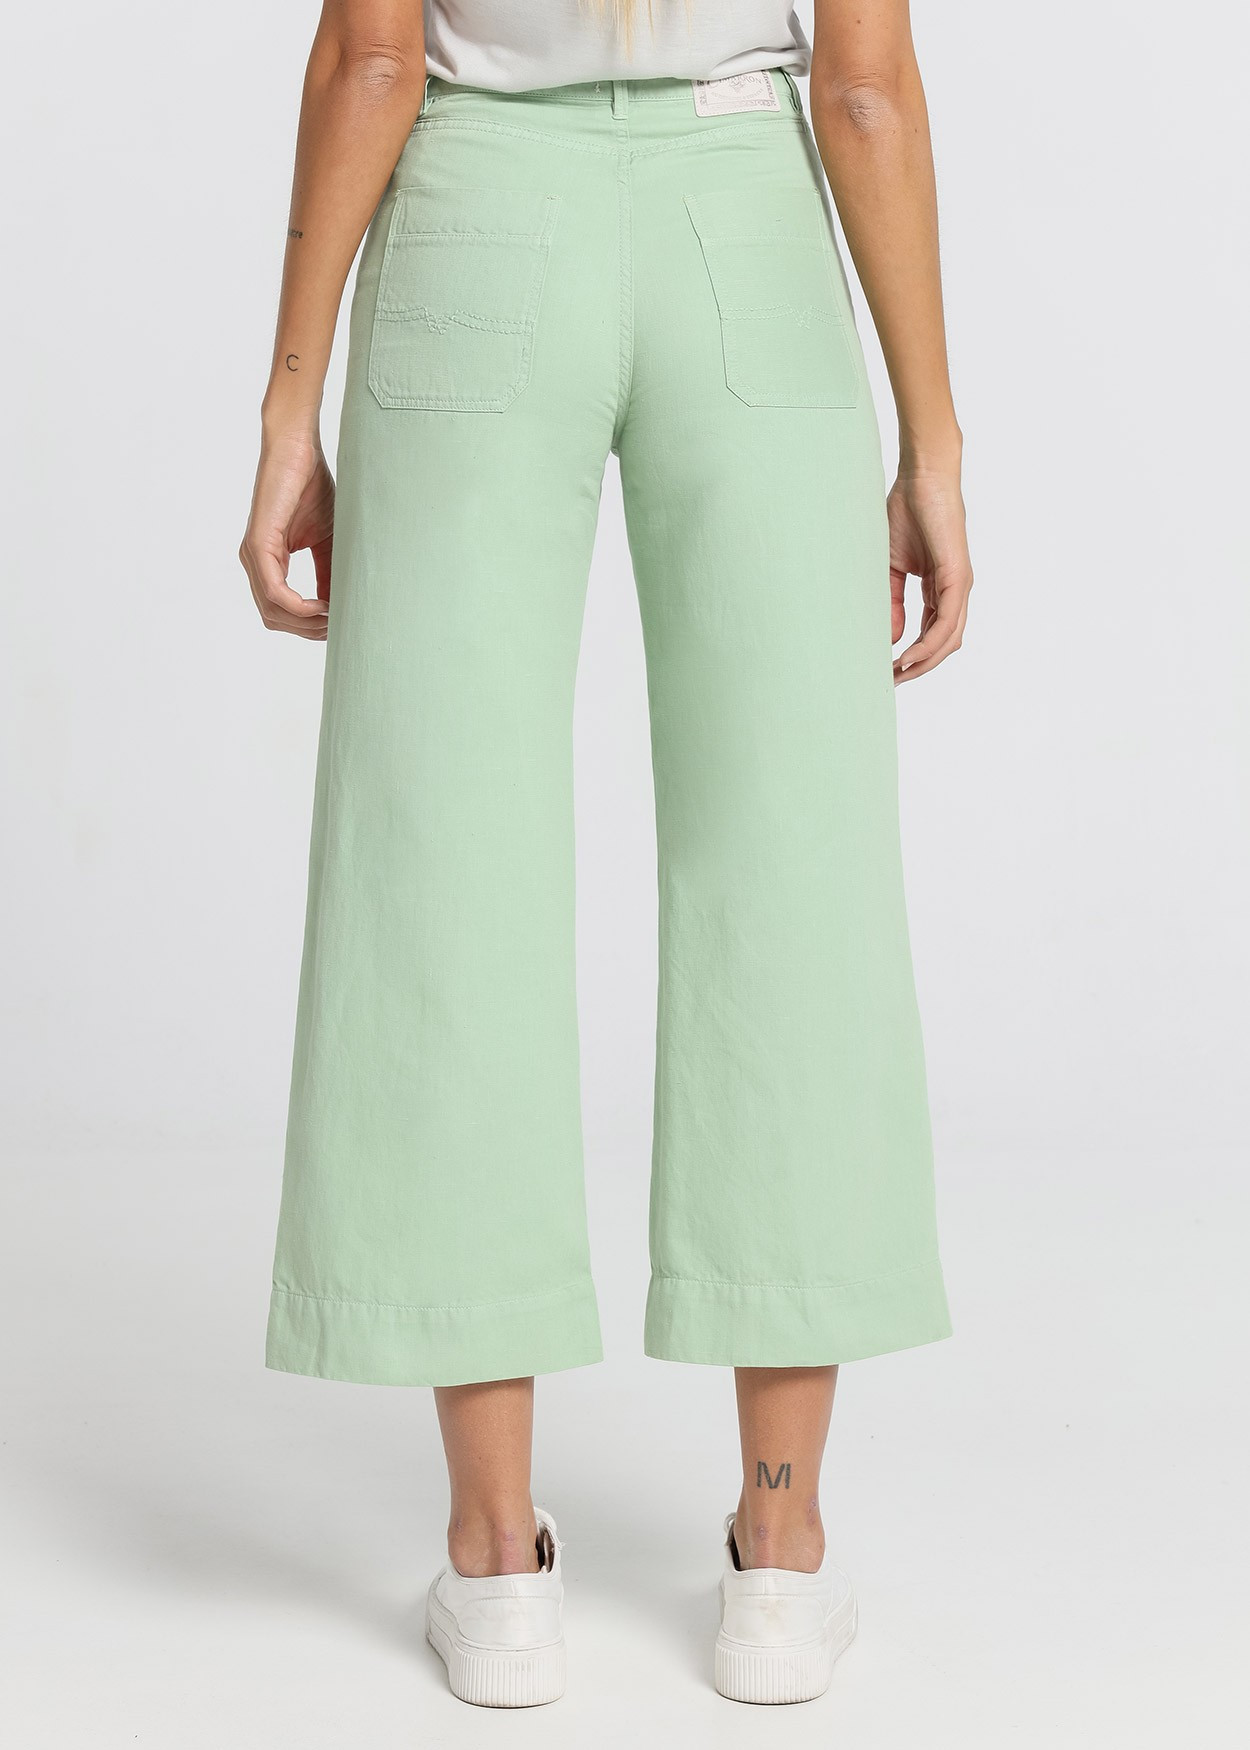 Pantalon de couleur Martina-Zoelie | Taille naturelle - Coupe large court | Taille en pouces Cimarron